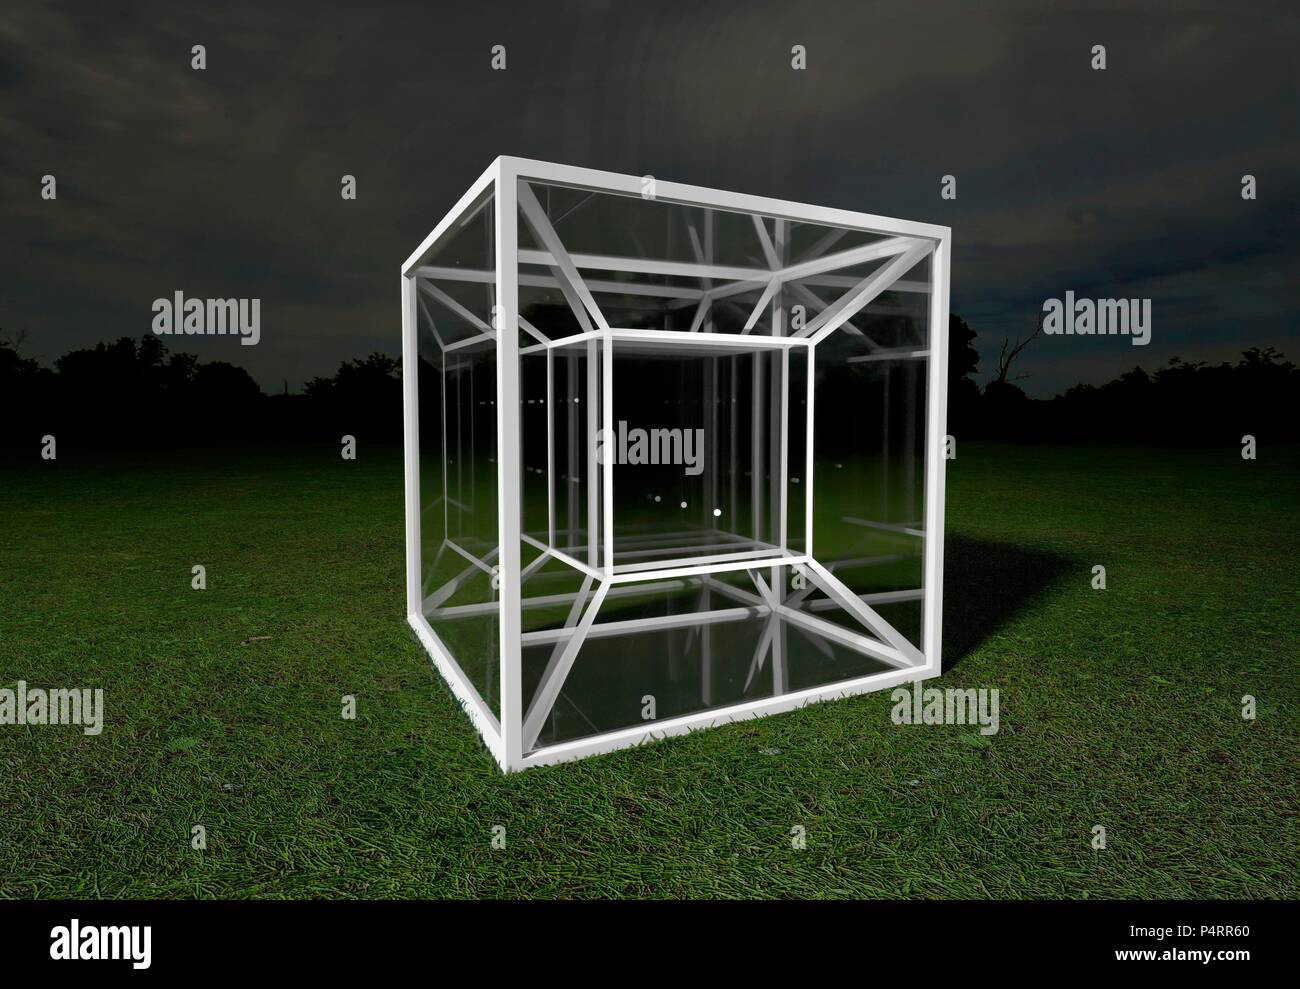 Modello di un tesseract con pannelli di vetro creando riflessi interni suggestivi di multi-dimensionale spazio. Un tesseract è un 4-dimensionale di analogo di un cubo,come un cubo è un 3-dimensionale di analogo di un quadrato. Il modello è una proiezione teorica di un quattro cubo dimensionale su uno spazio tridimensionale,analogo a un'immagine,disegno o ombra di un cubo come una proiezione di un tridimensionale cubo su un area bidimensionale (piano,foglio di carta). Foto Stock